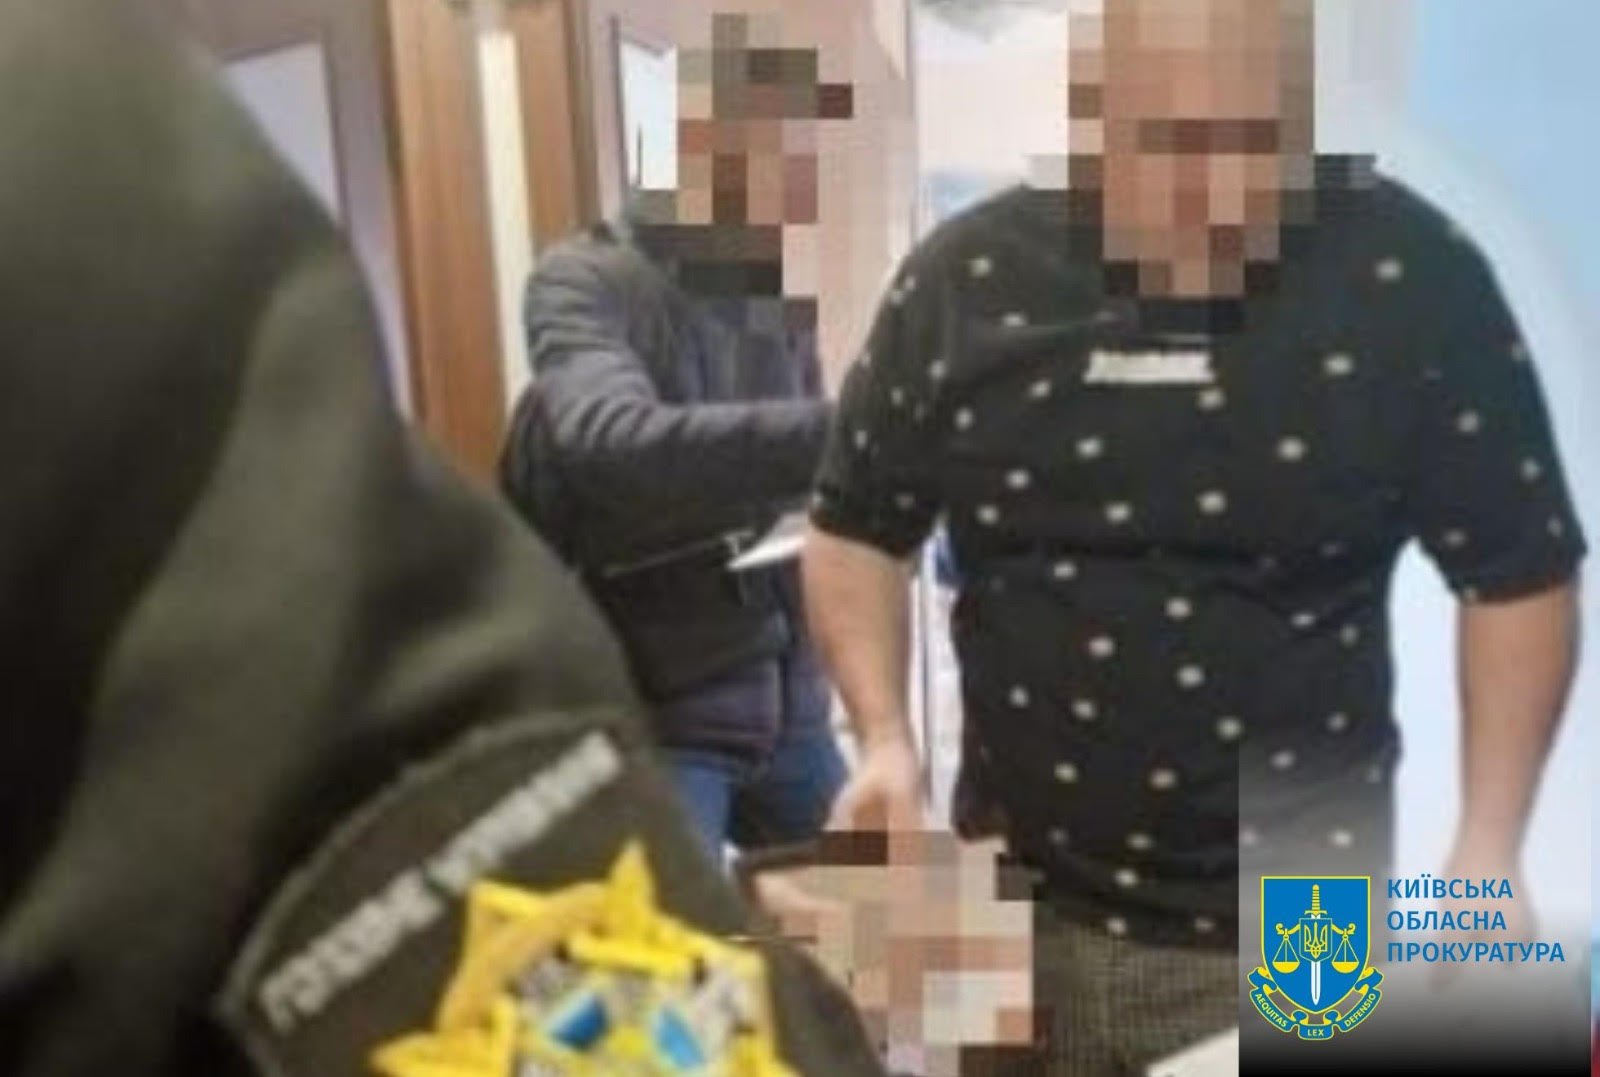 Мешканцю Київщини повідомлено про підозру у поширенні ворожої пропаганди